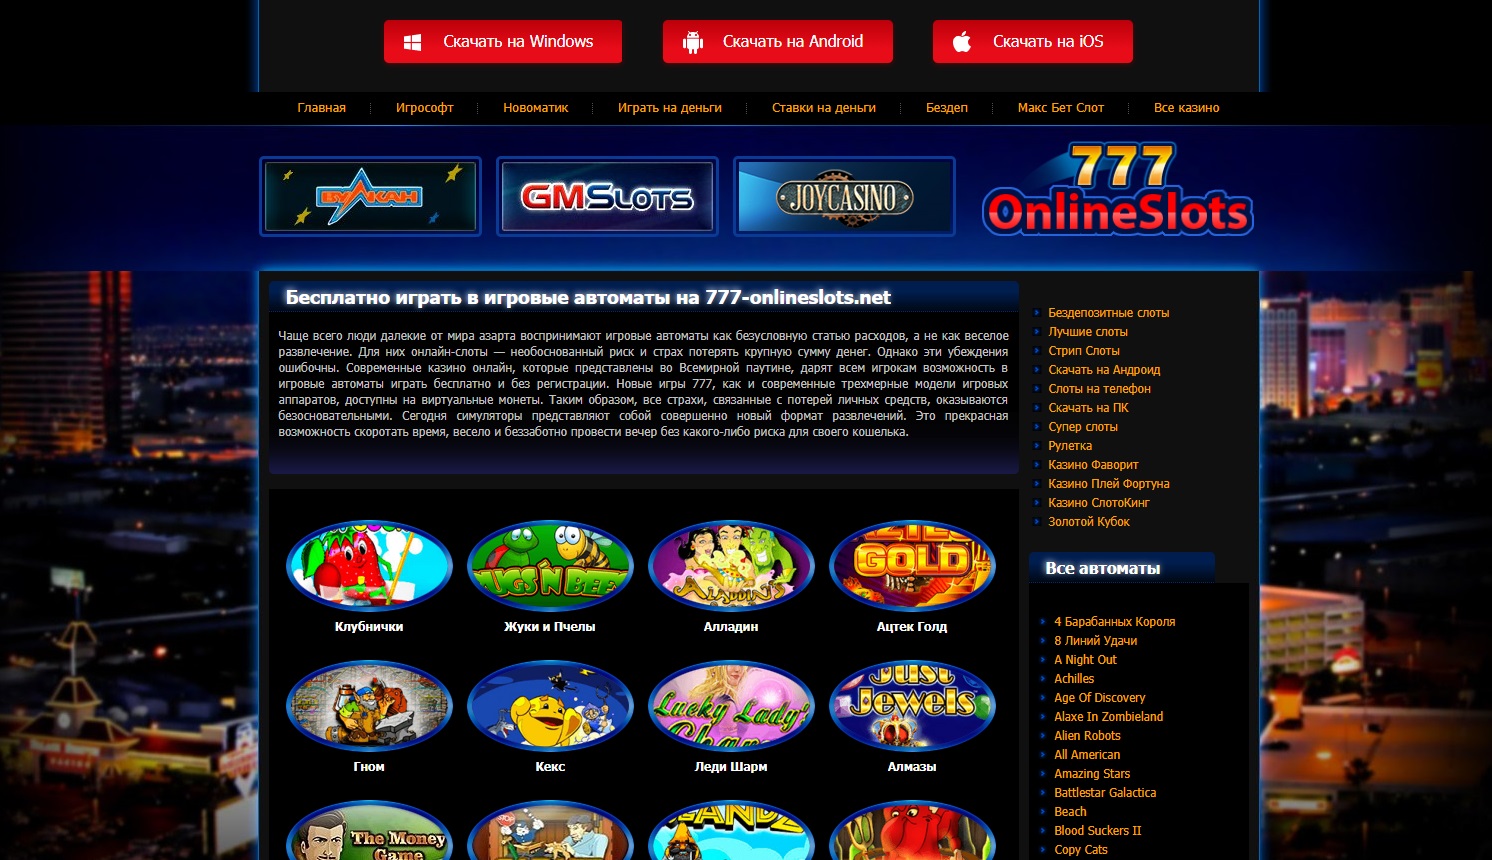 Вулкан фортуна казино официальный сайт европейская рулетка играть онлайн бесплатно